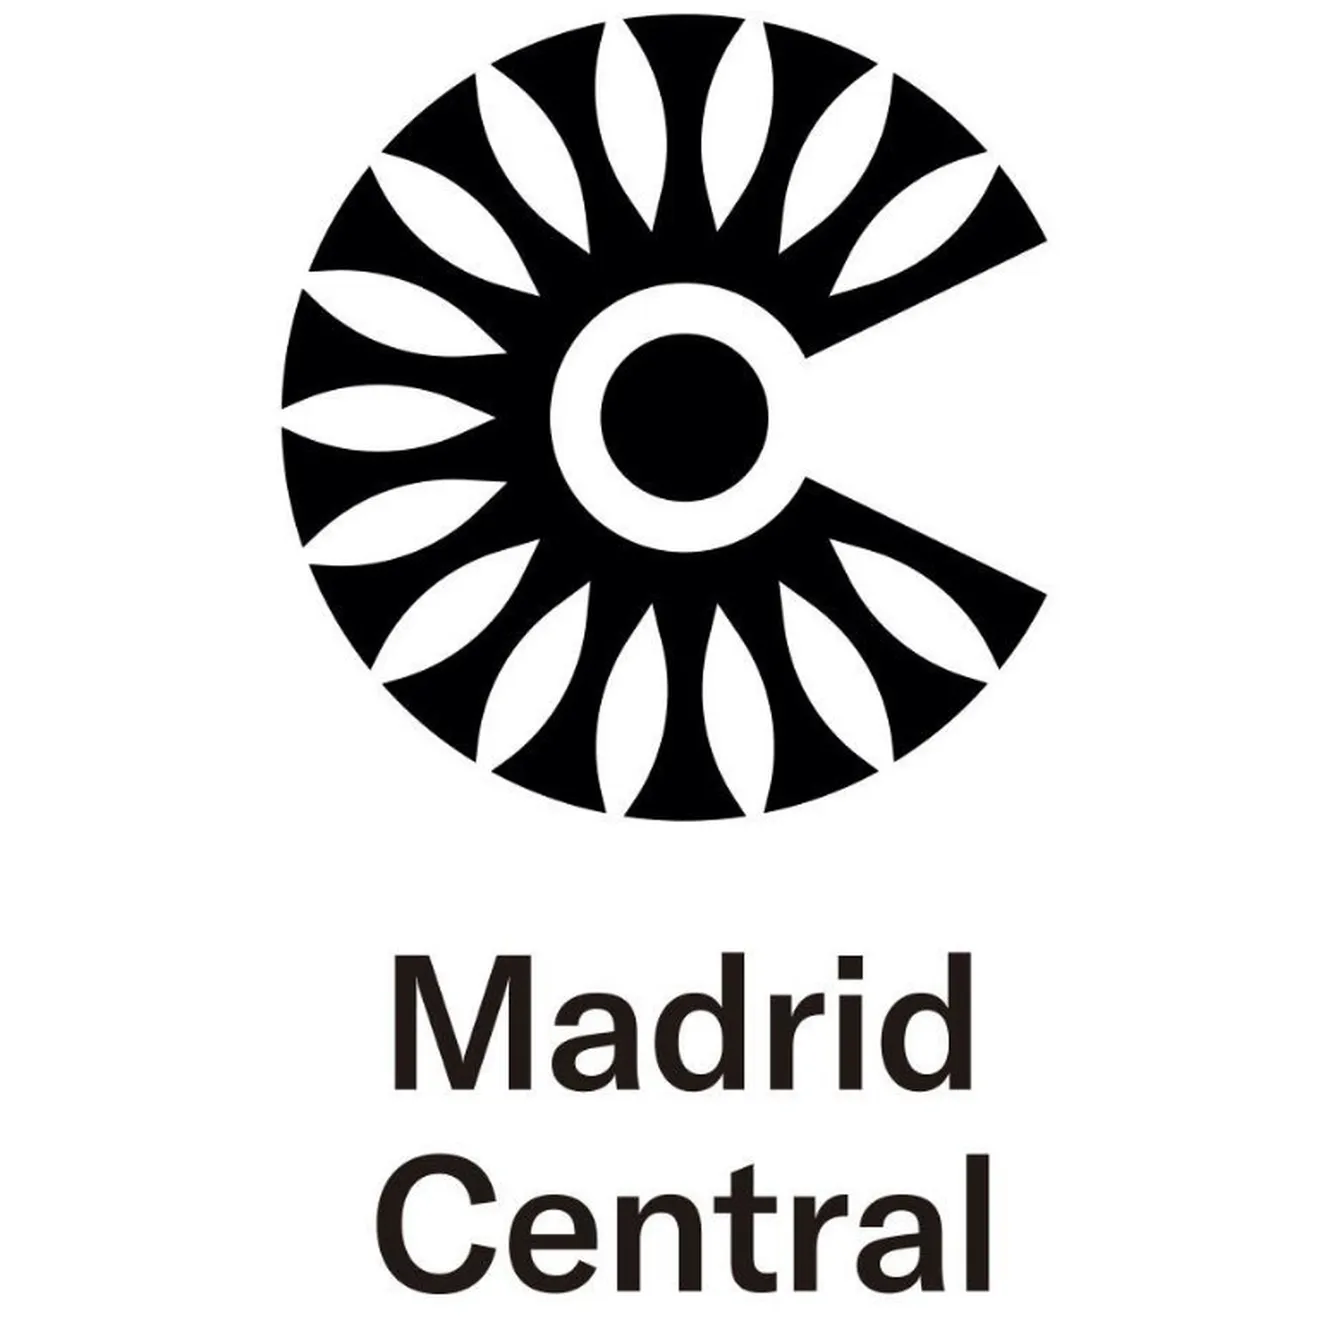 Madrid Central emitirá sanciones desde este sábado, 16 de marzo